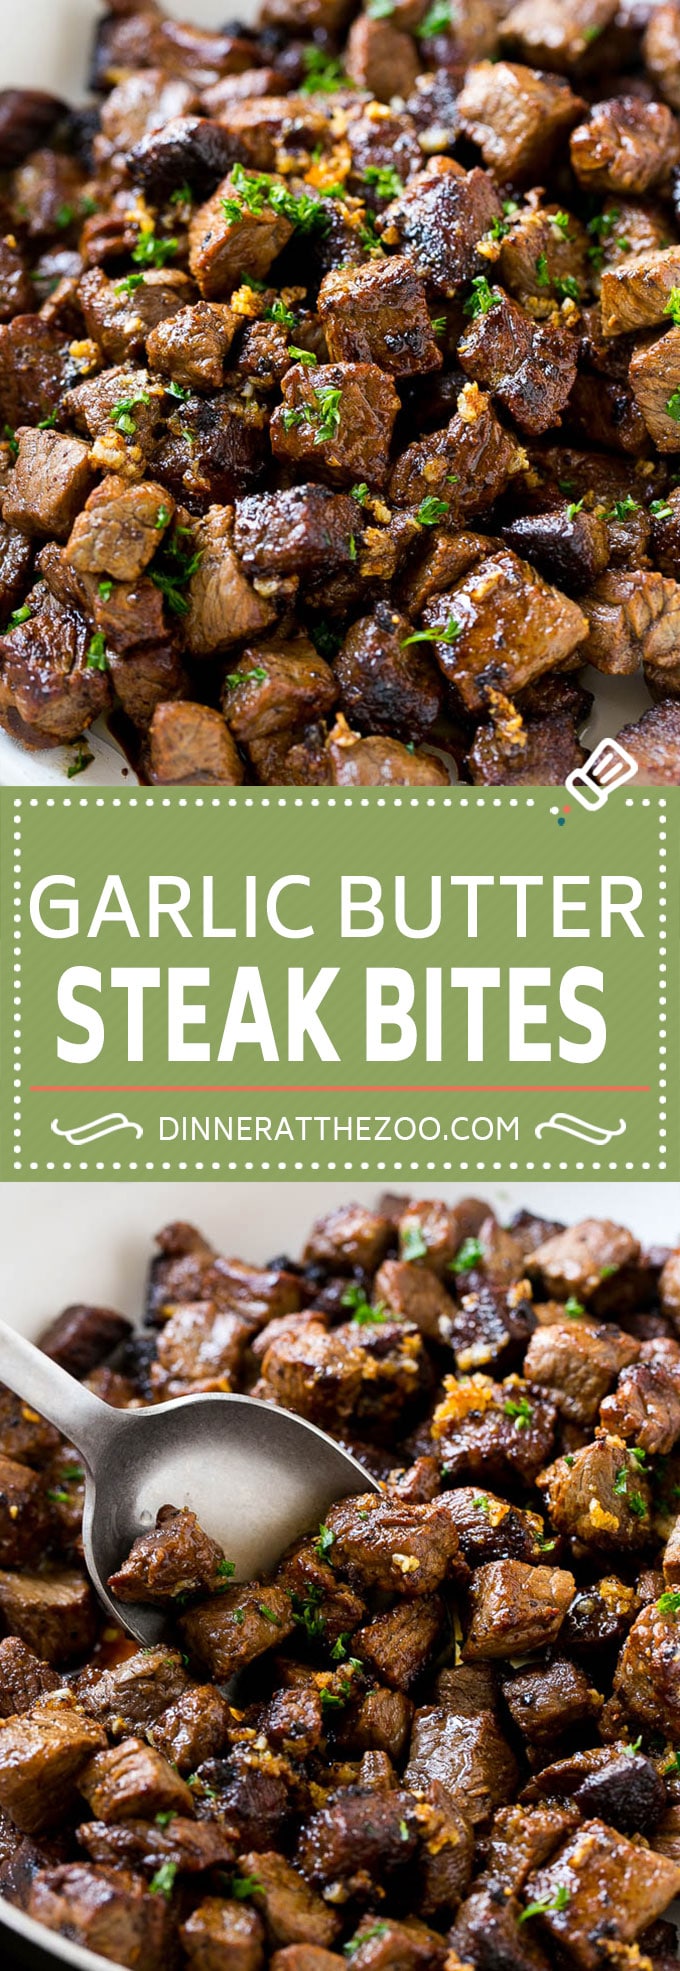 Steak Bites With Garlic Butter